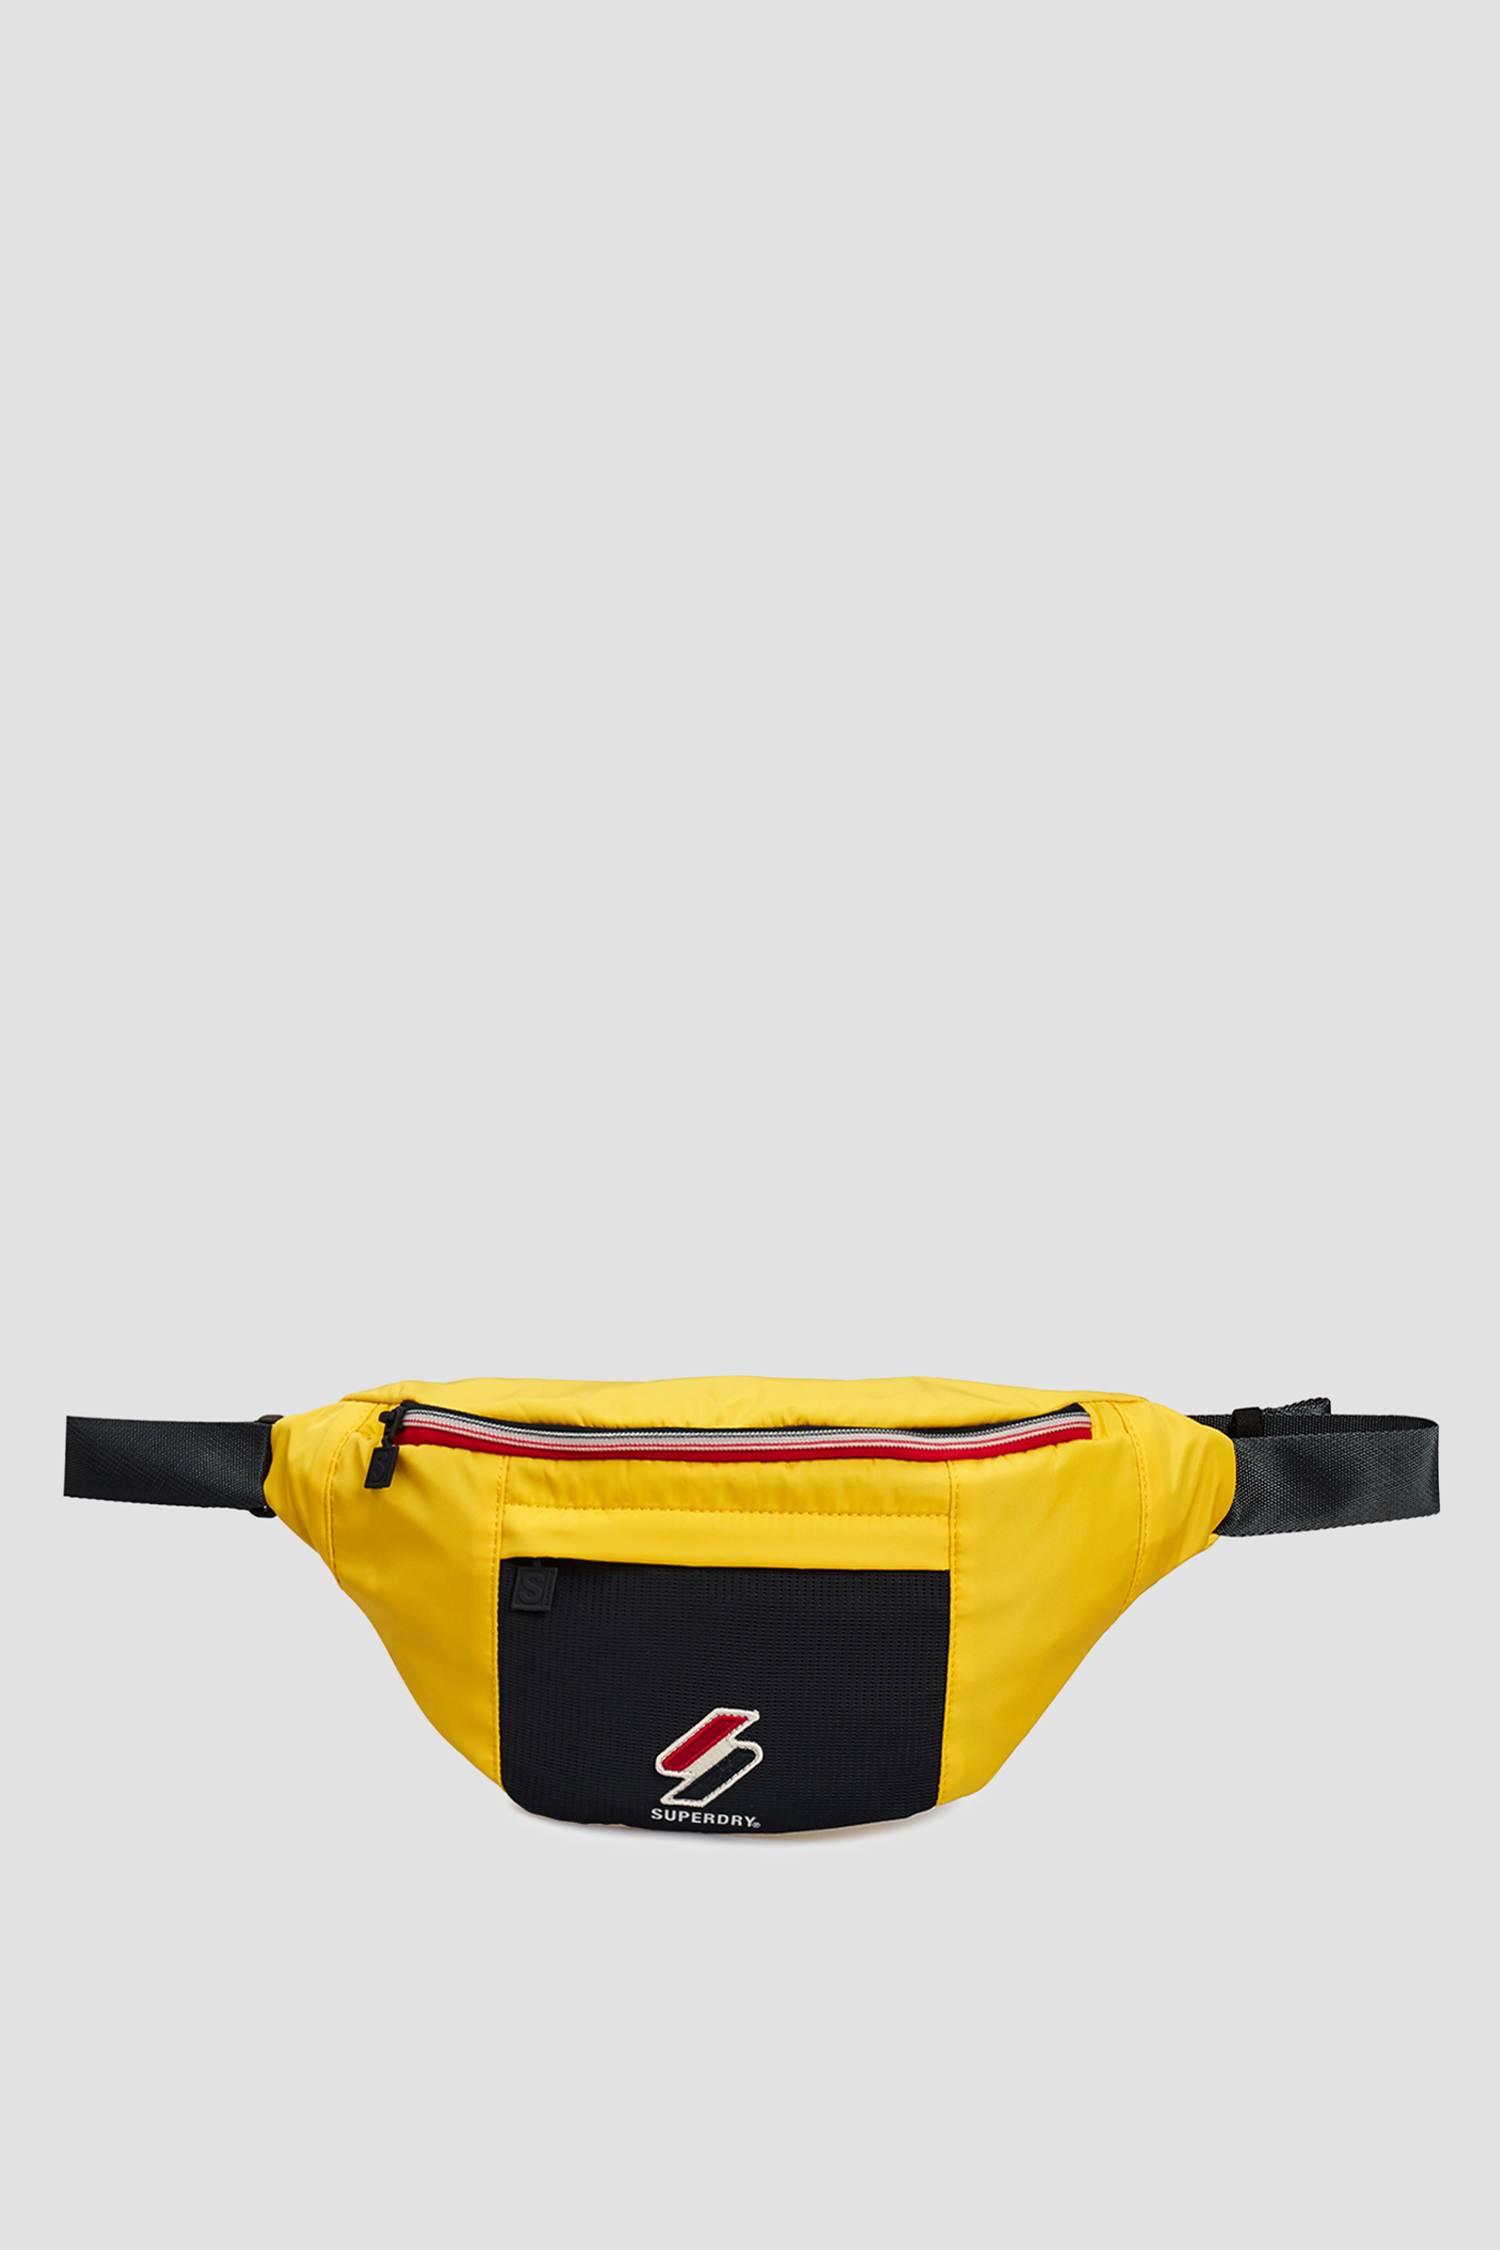 Мужская желтая поясная сумка SuperDry M9110405A;NWI